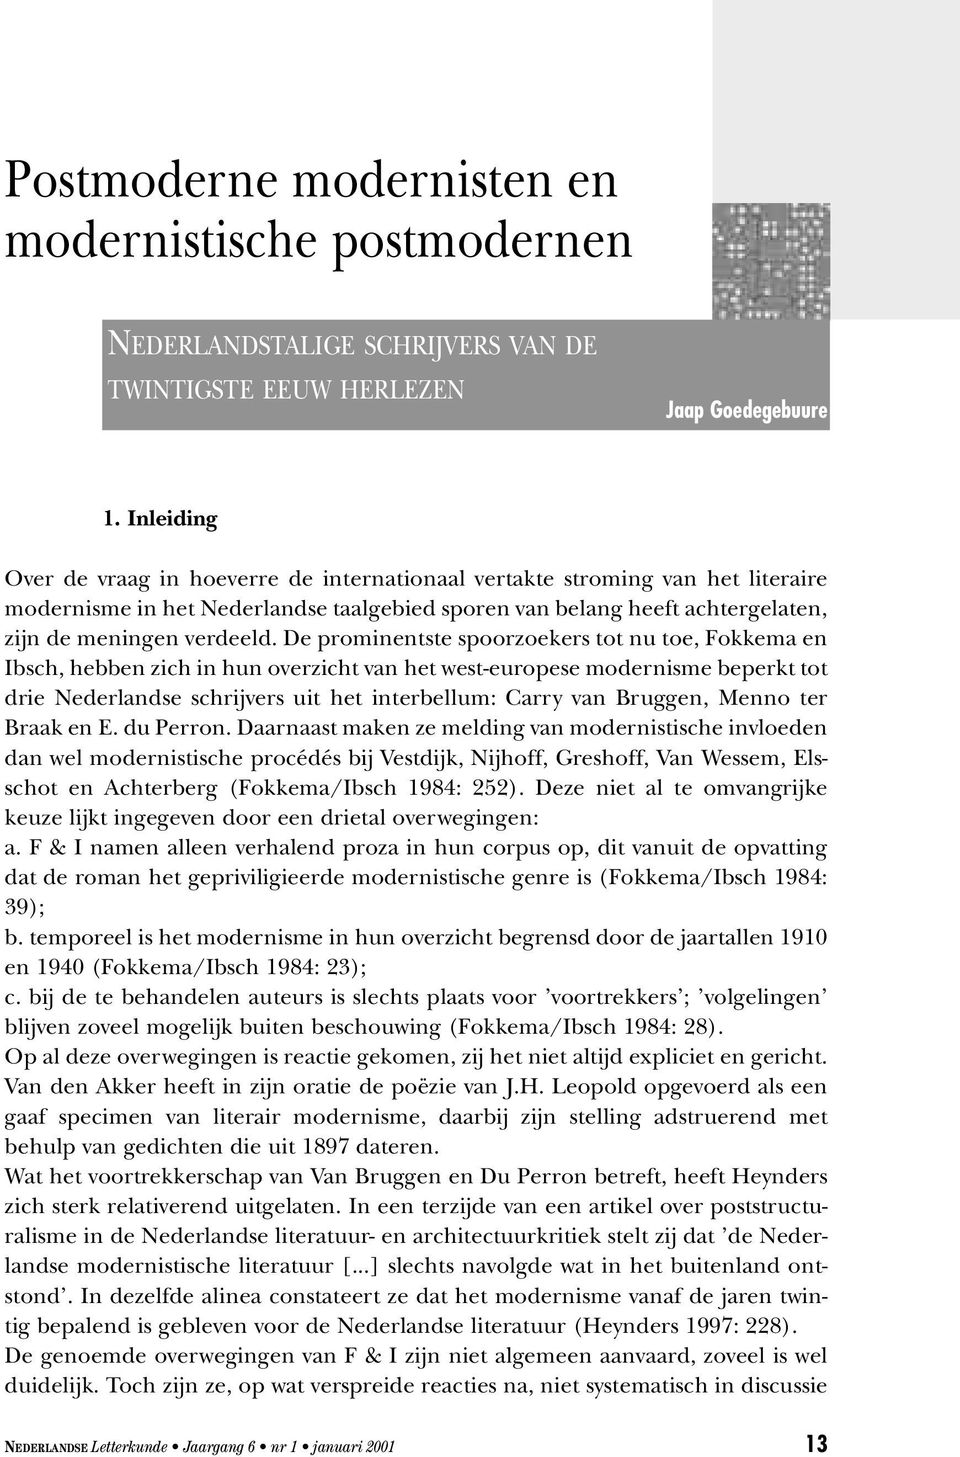 De prominentste spoorzoekers tot nu toe, Fokkema en Ibsch, hebben zich in hun overzicht van het west-europese modernisme beperkt tot drie Nederlandse schrijvers uit het interbellum: Carry van